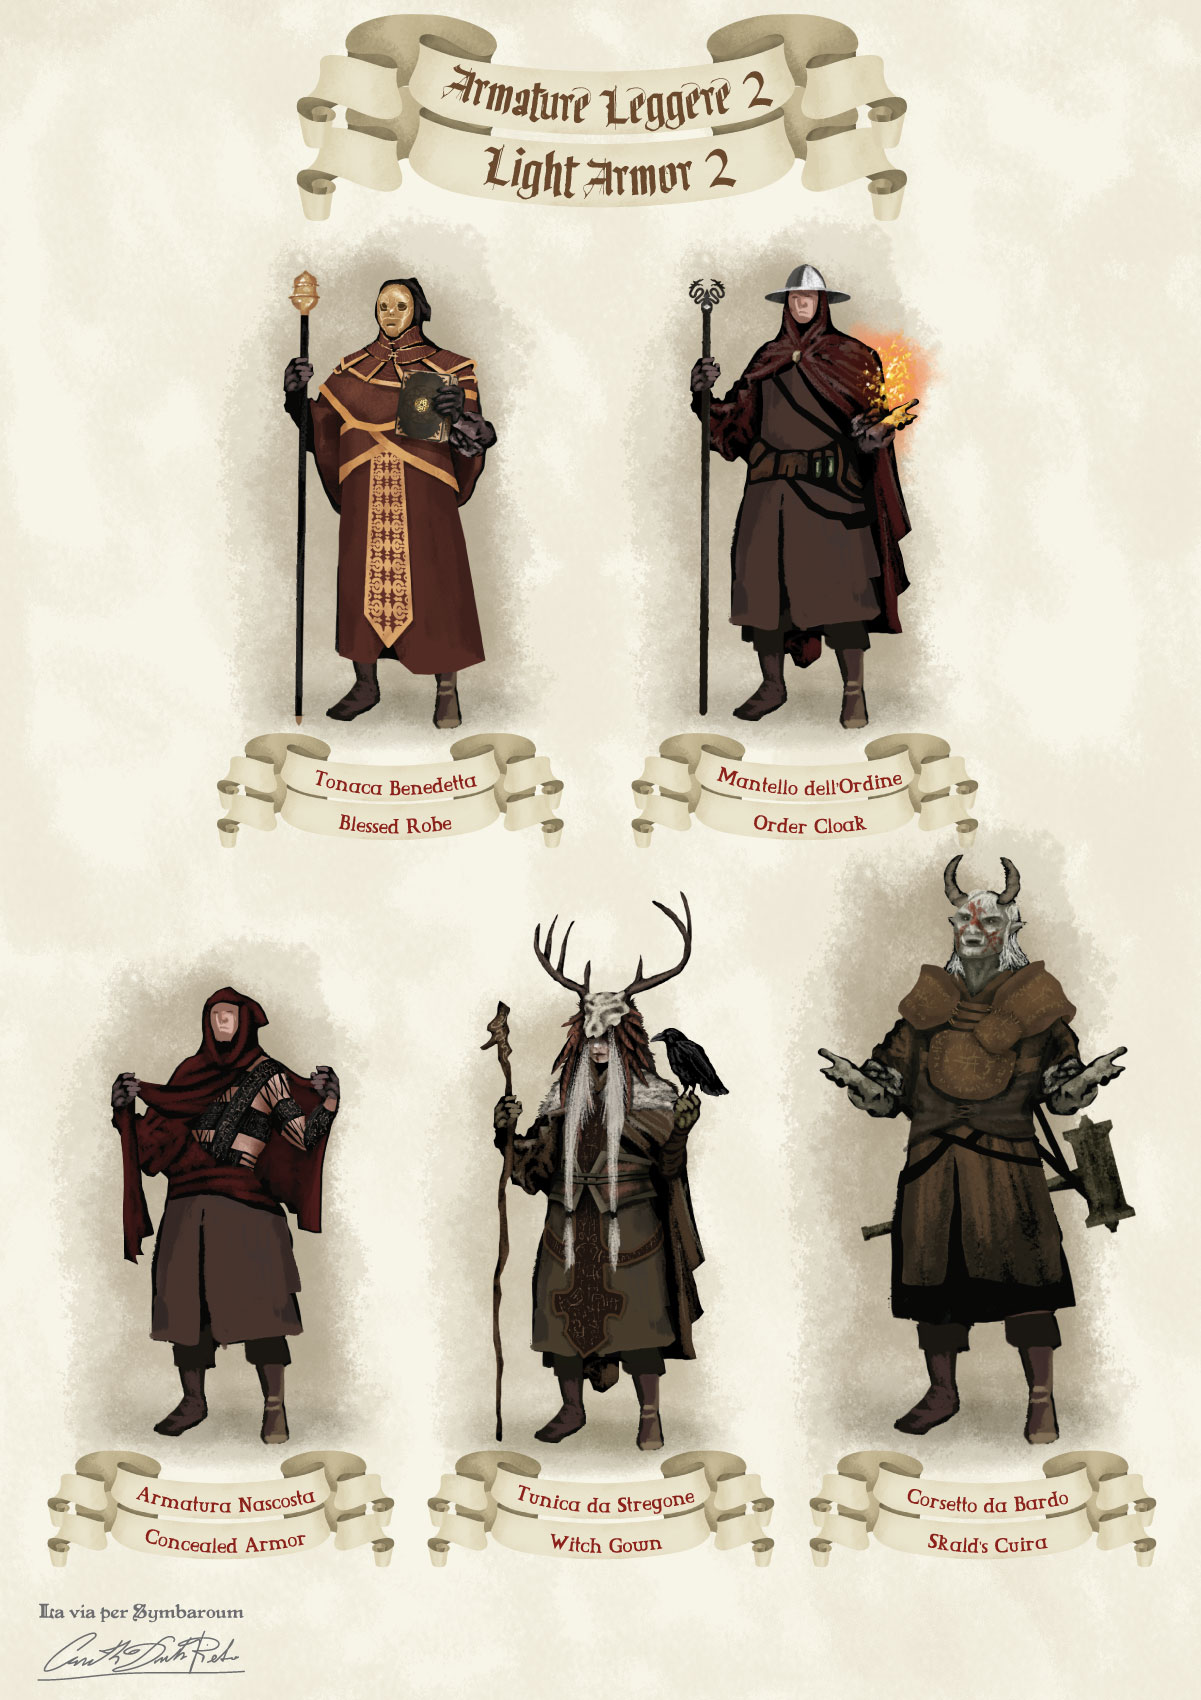 Immagini di armature leggere fantasy medievali del gioco di ruolo Symbaroum